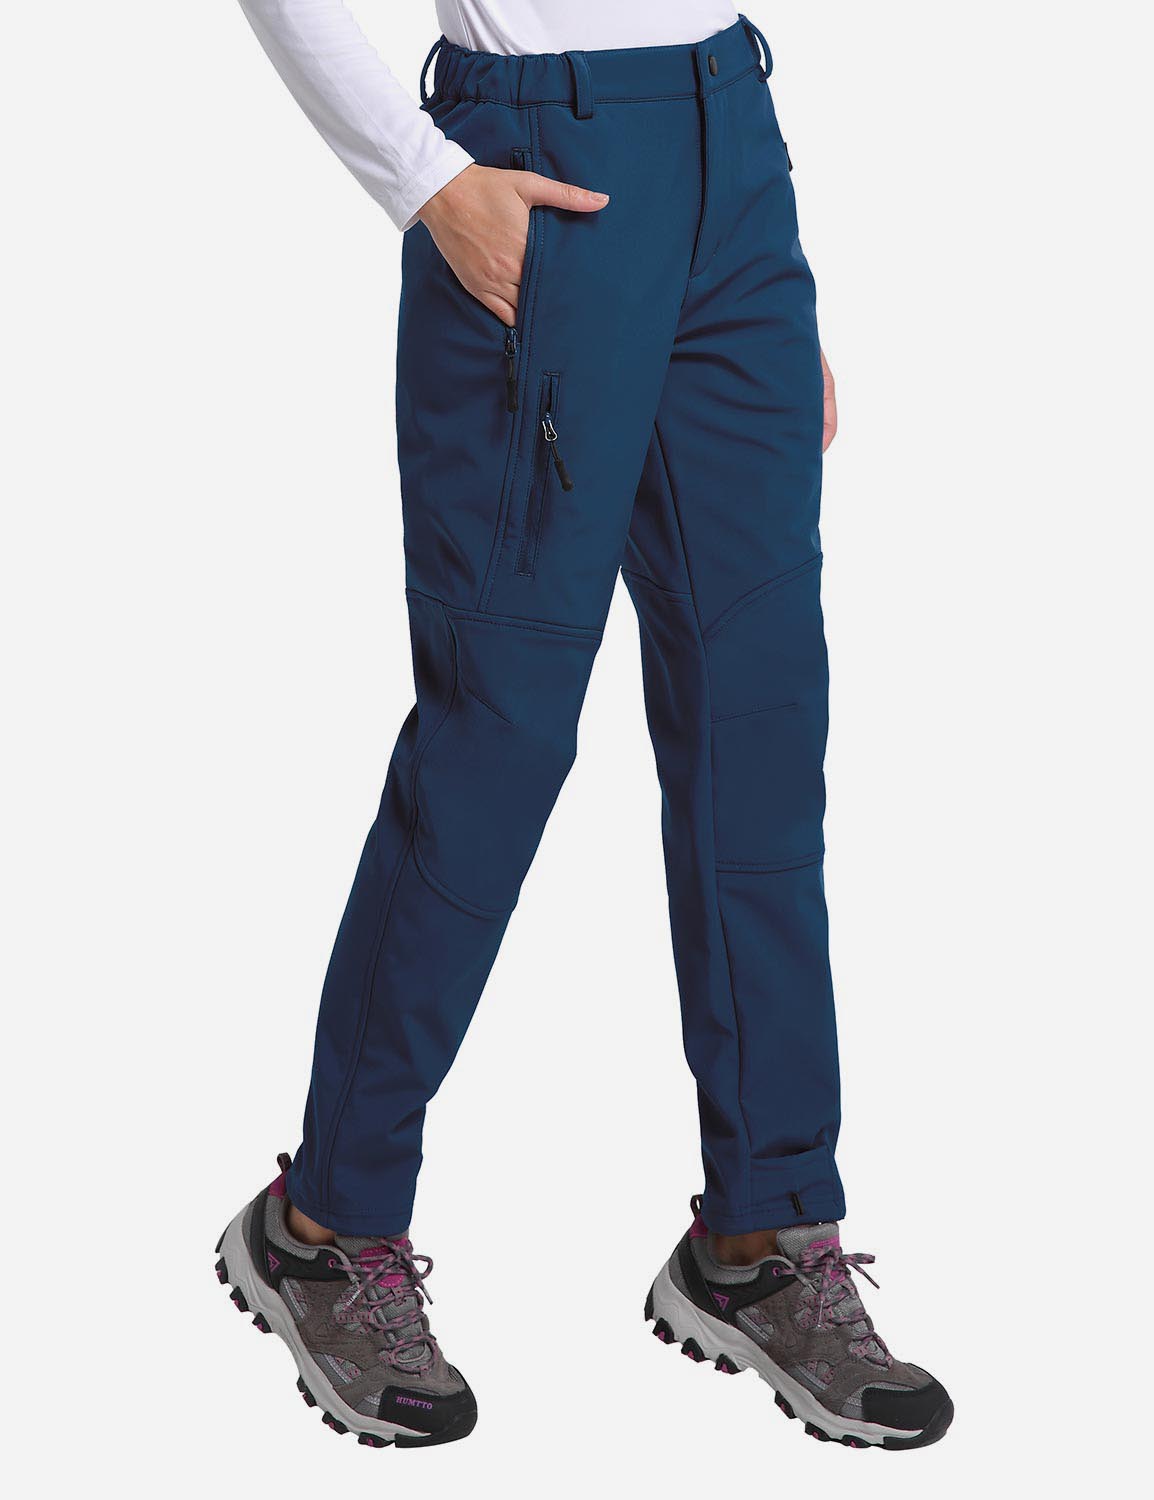 Baleaf Women's Fleece Wind- & Waterproof Moutaineering Outdoor Pants agb010 Deep Blue Side